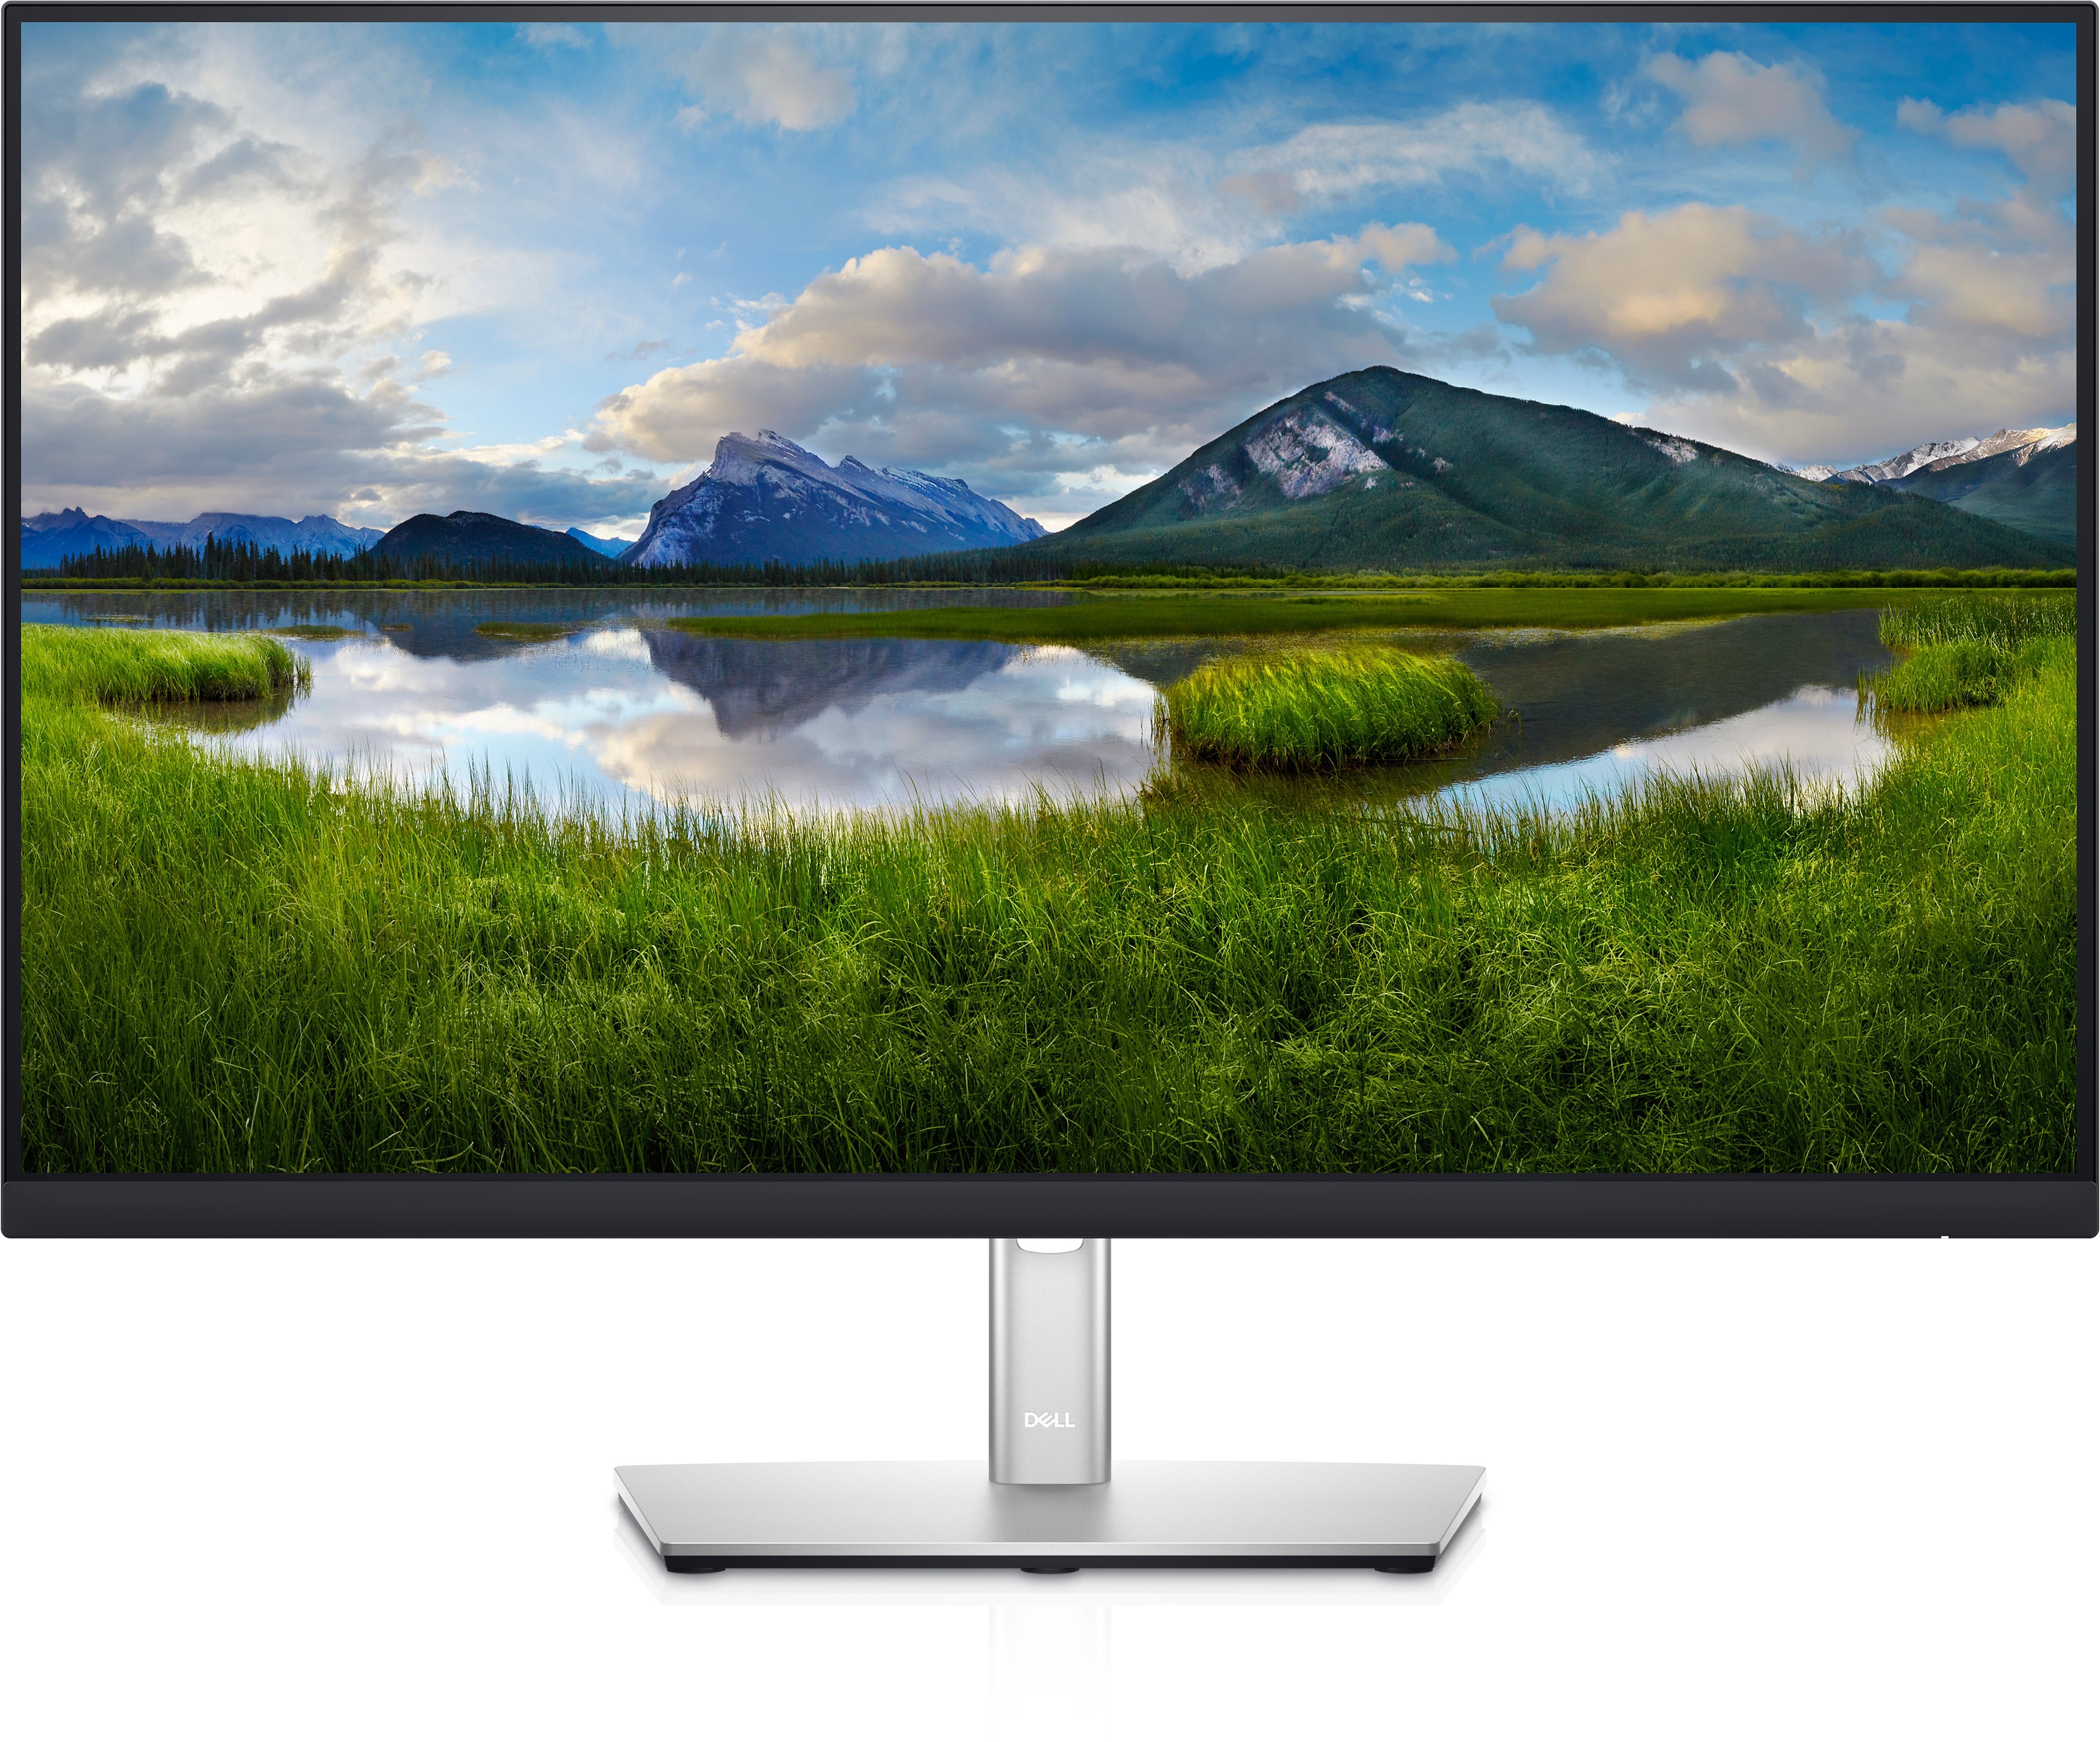 Bạn đang sở hữu màn hình Dell P2721Q monitor 4K UHD, nhưng lại chưa biết sử dụng hình nền phù hợp với độ phân giải của màn hình. Hãy cùng khám phá bộ sưu tập hình nền 4K đẹp nhất tại đây để tận dụng tối đa chất lượng đồ họa của màn hình Dell P2721Q monitor của bạn. Cùng xem ngay ảnh liên quan để biết thêm chi tiết.